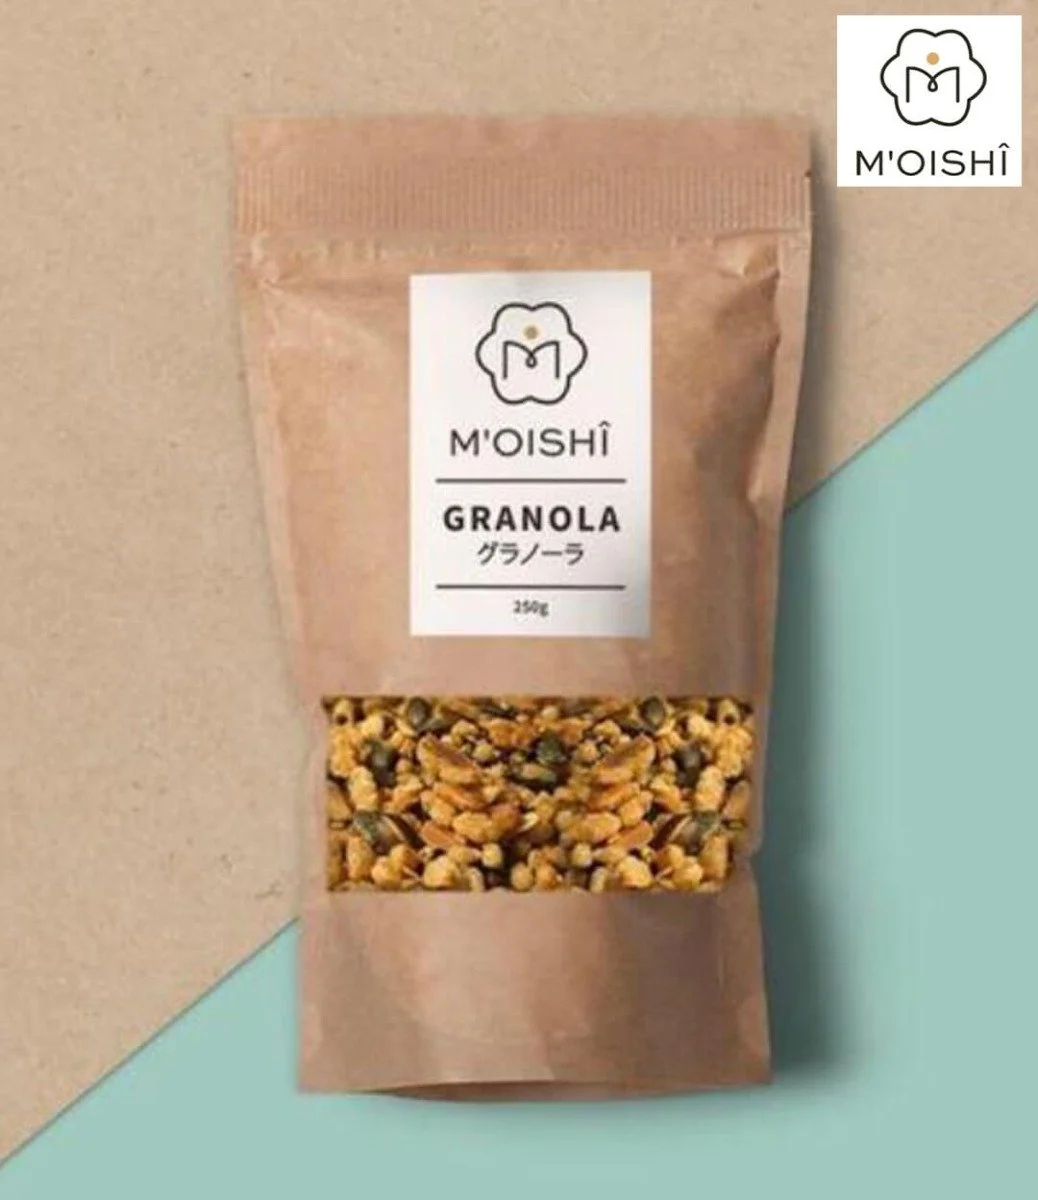 Japanese Granola by Moishi